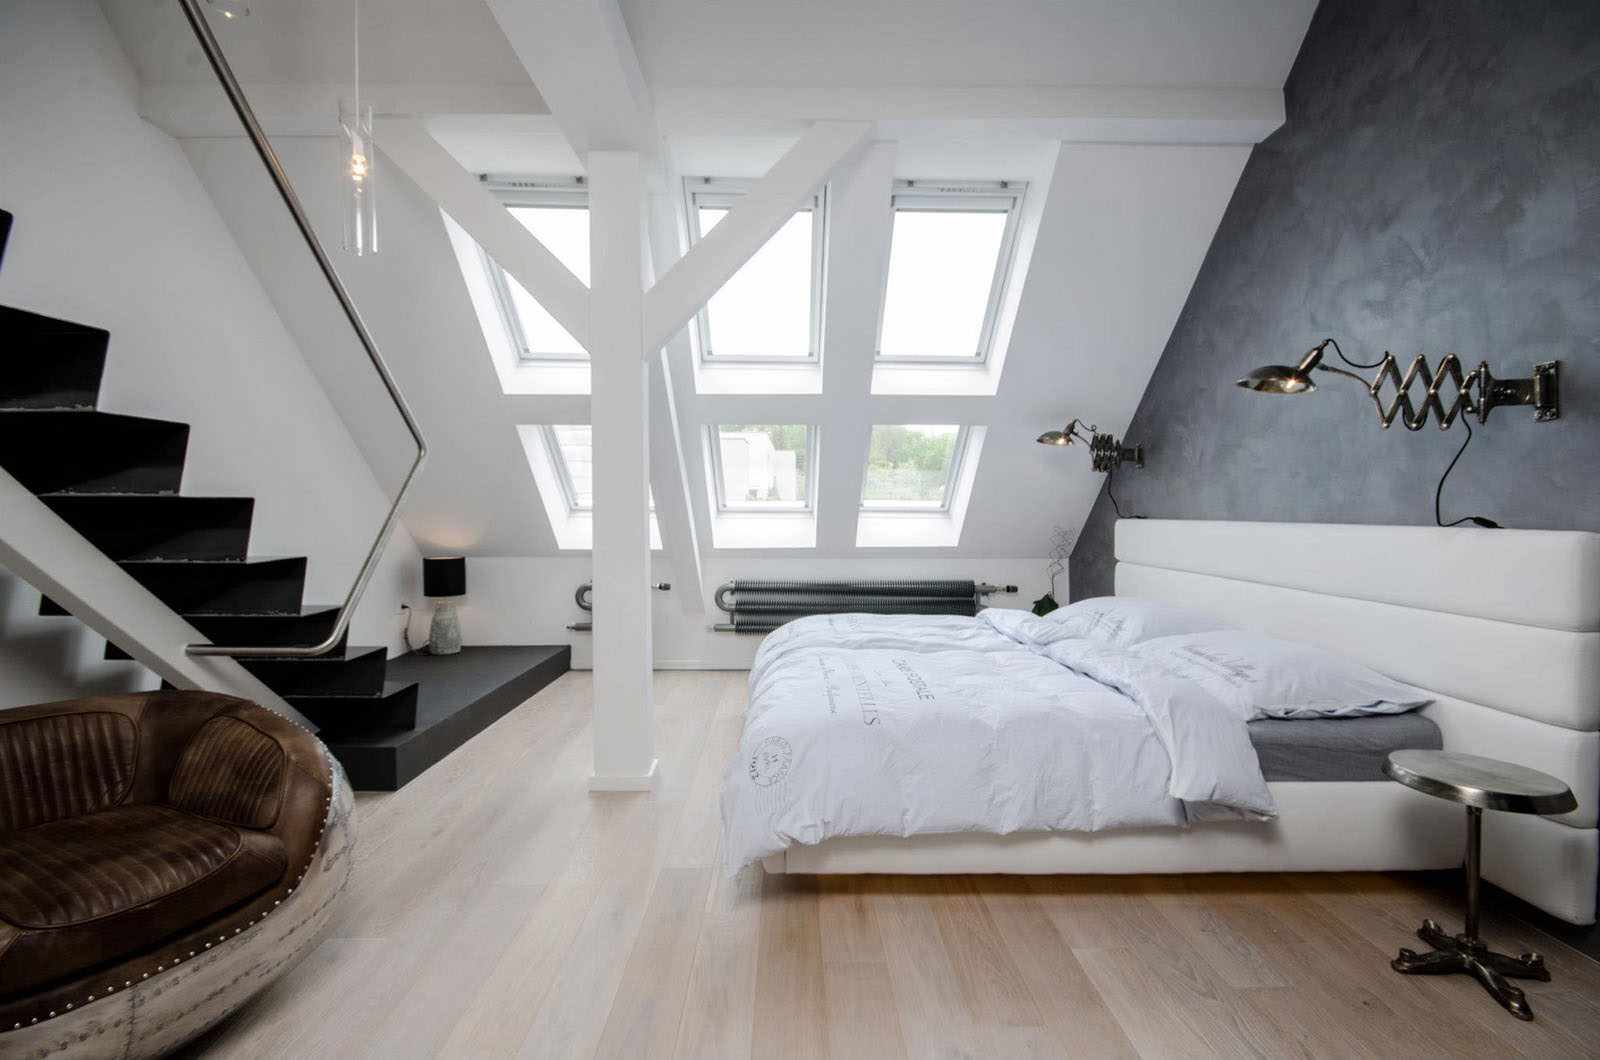 הרעיון של סגנון יוצא דופן של חדר שינה בעליית הגג